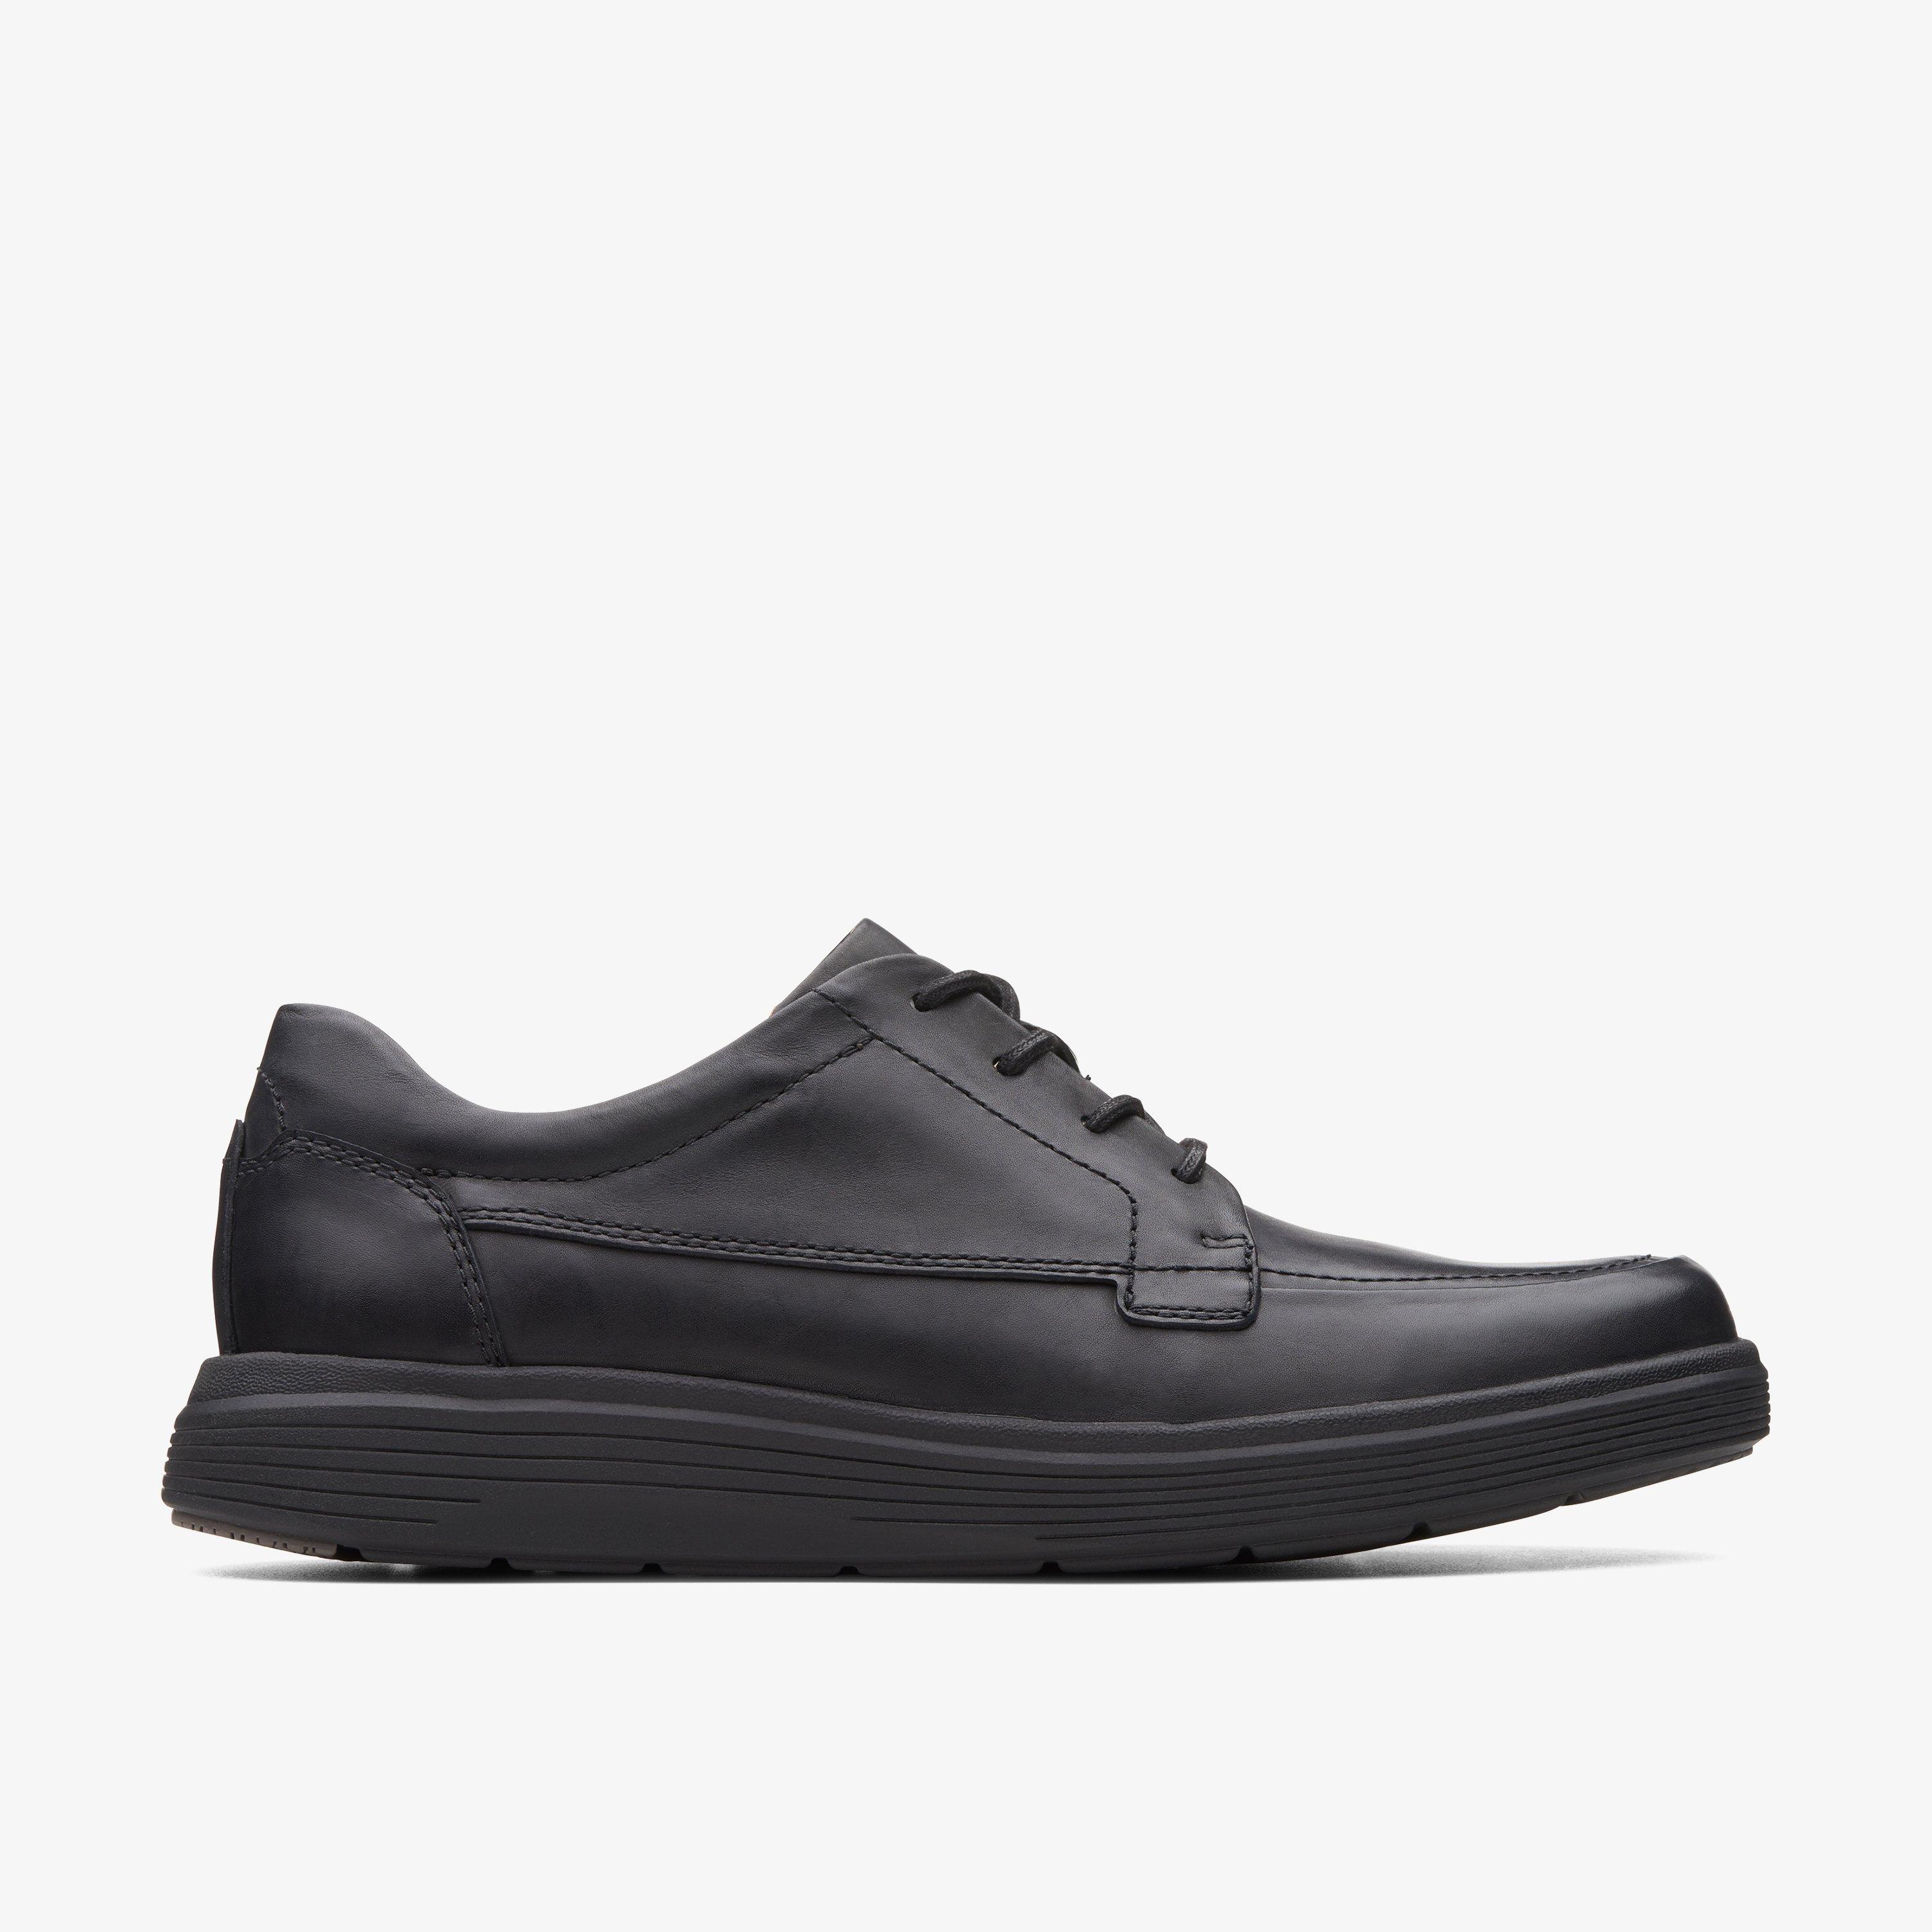 Size 12 Clarks Un Abode Ease Black Leather shoes